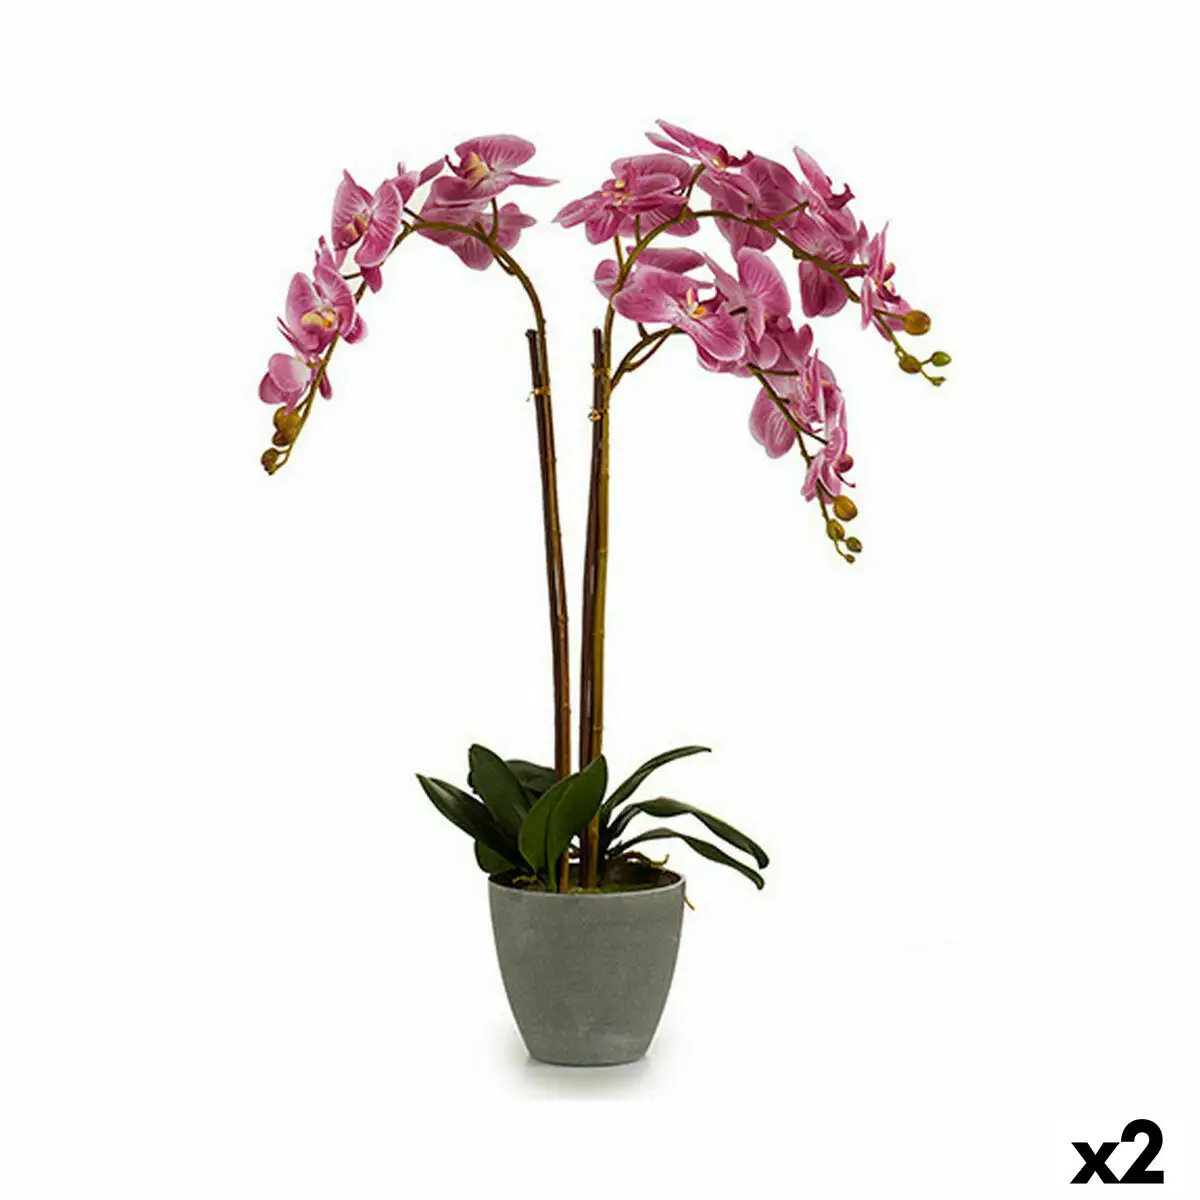 Plante decorative orchidee plastique 33 x 77 x 33 cm 2 unites _6301. DIAYTAR SENEGAL - Votre Passage vers le Chic et l'Élégance. Naviguez à travers notre boutique en ligne pour trouver des produits qui ajoutent une touche sophistiquée à votre style.